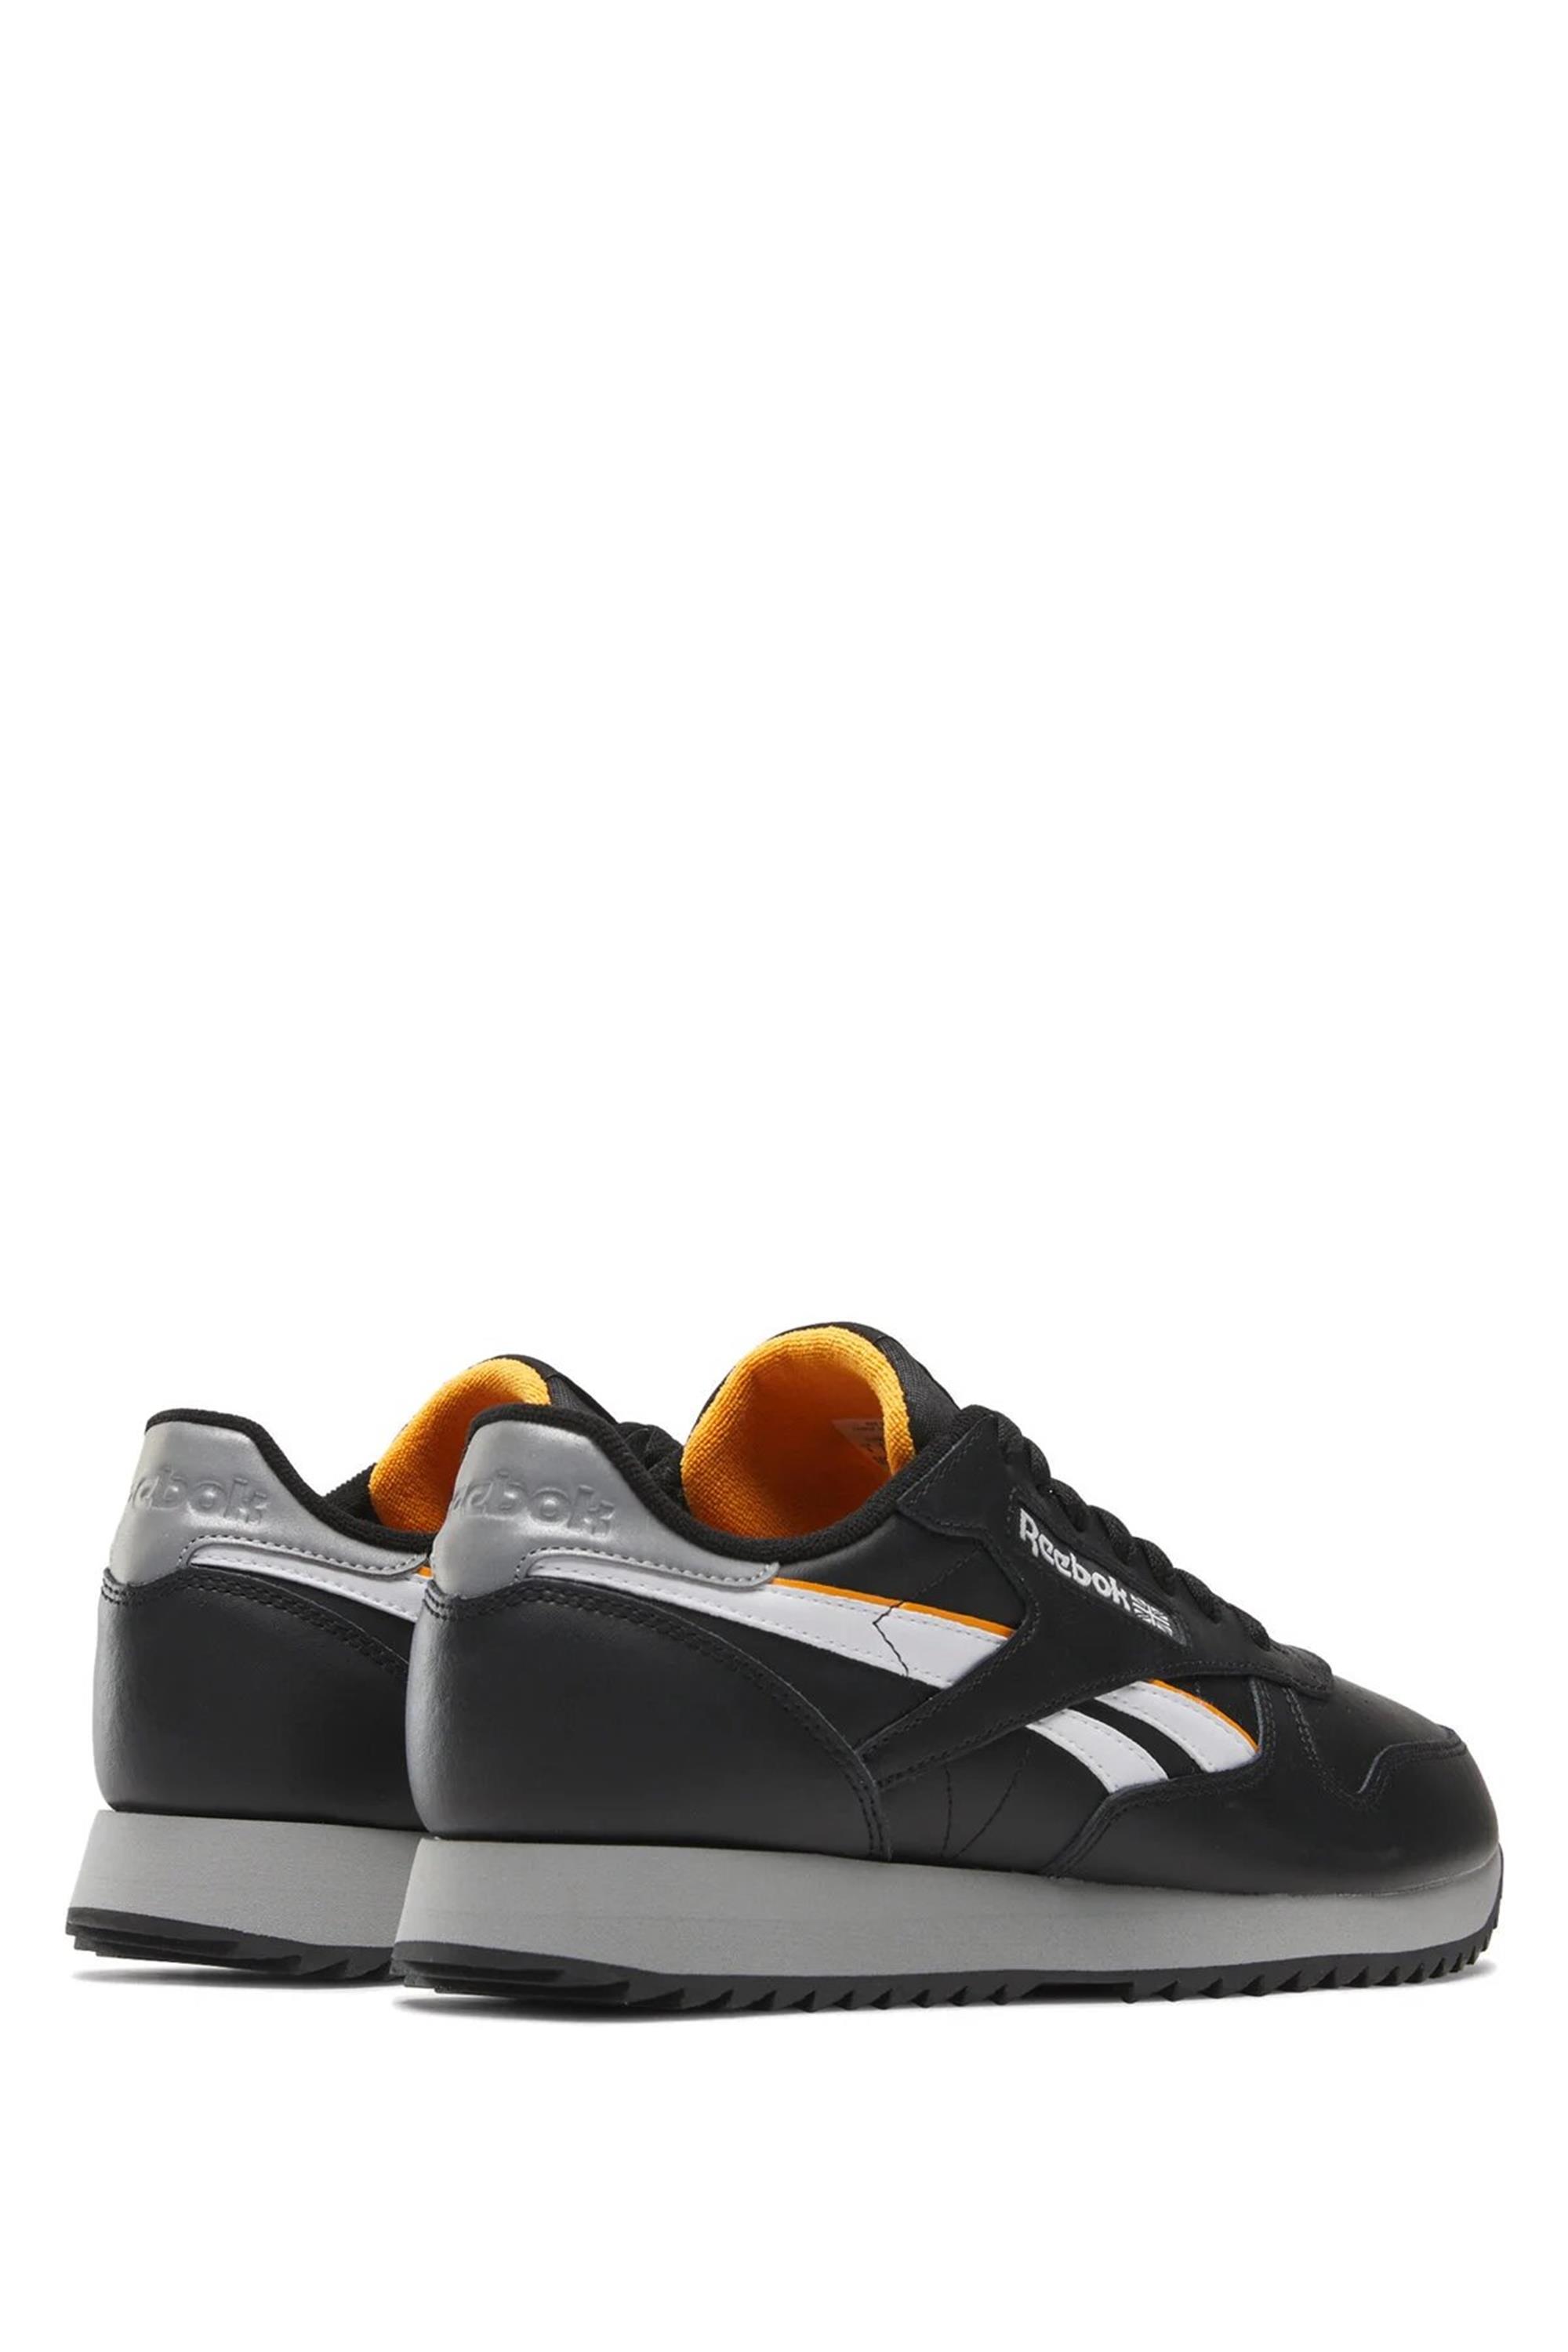 Reebok 101520089 Siyah Yetişkin Unisex Classic Leather Rıpple Sneaker  Ayakkabı